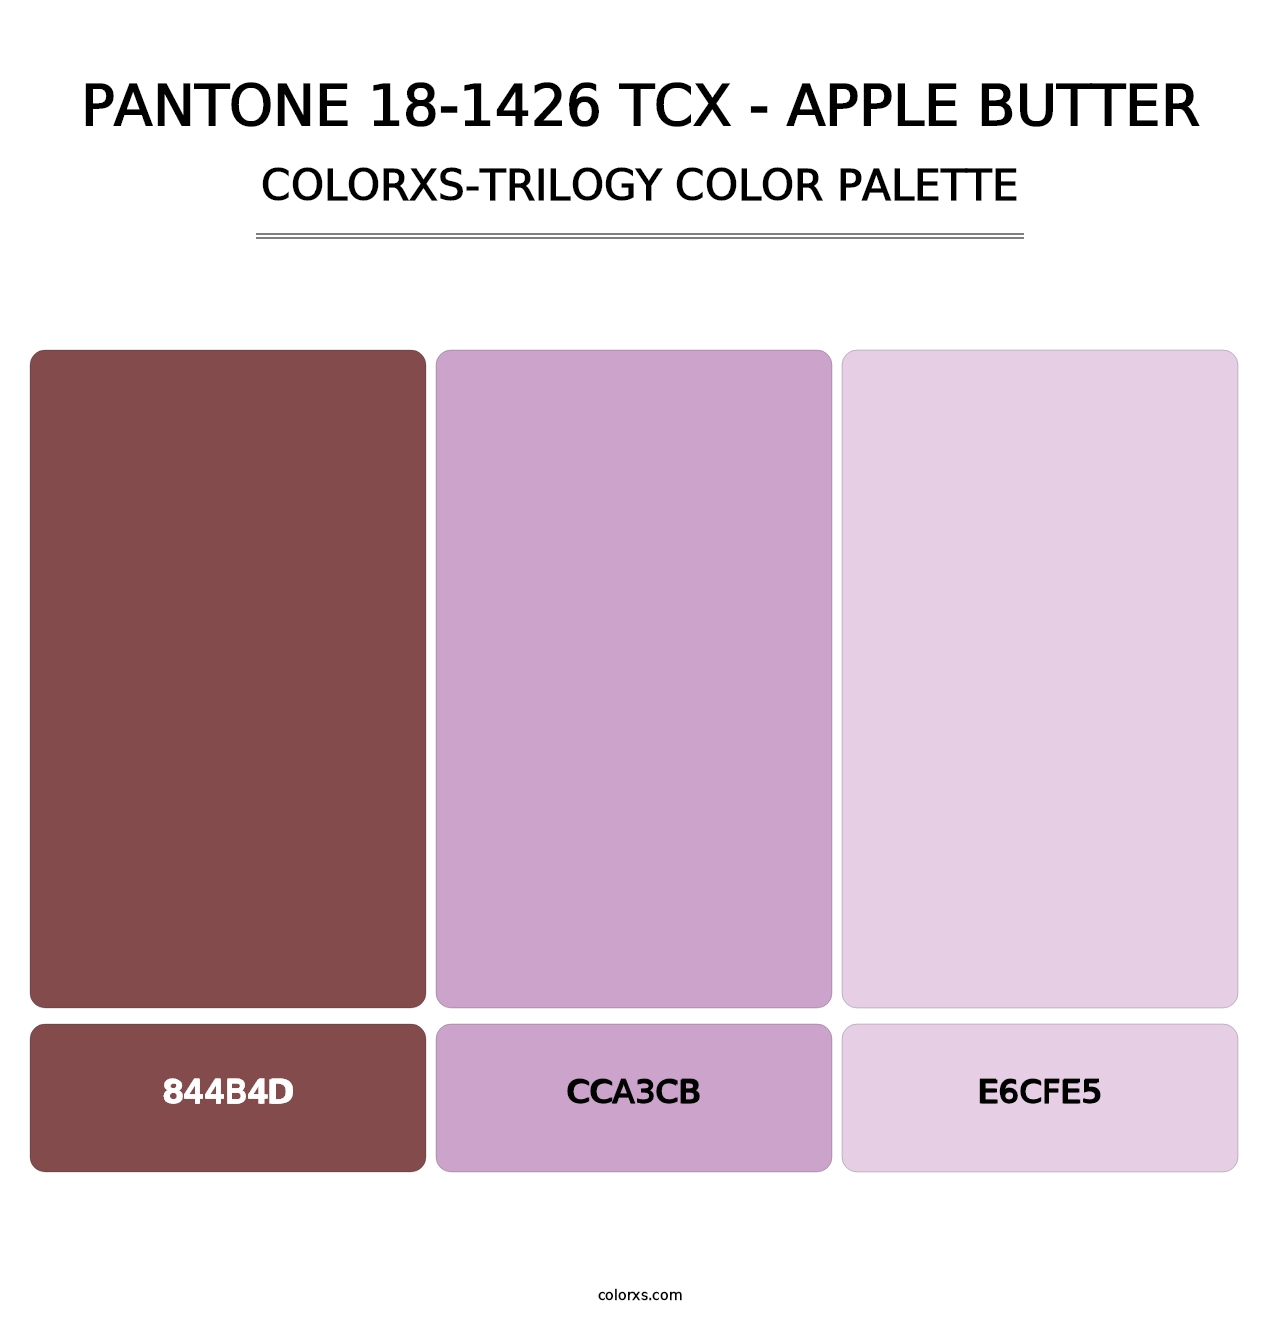 PANTONE 18-1426 TCX - Apple Butter - Colorxs Trilogy Palette